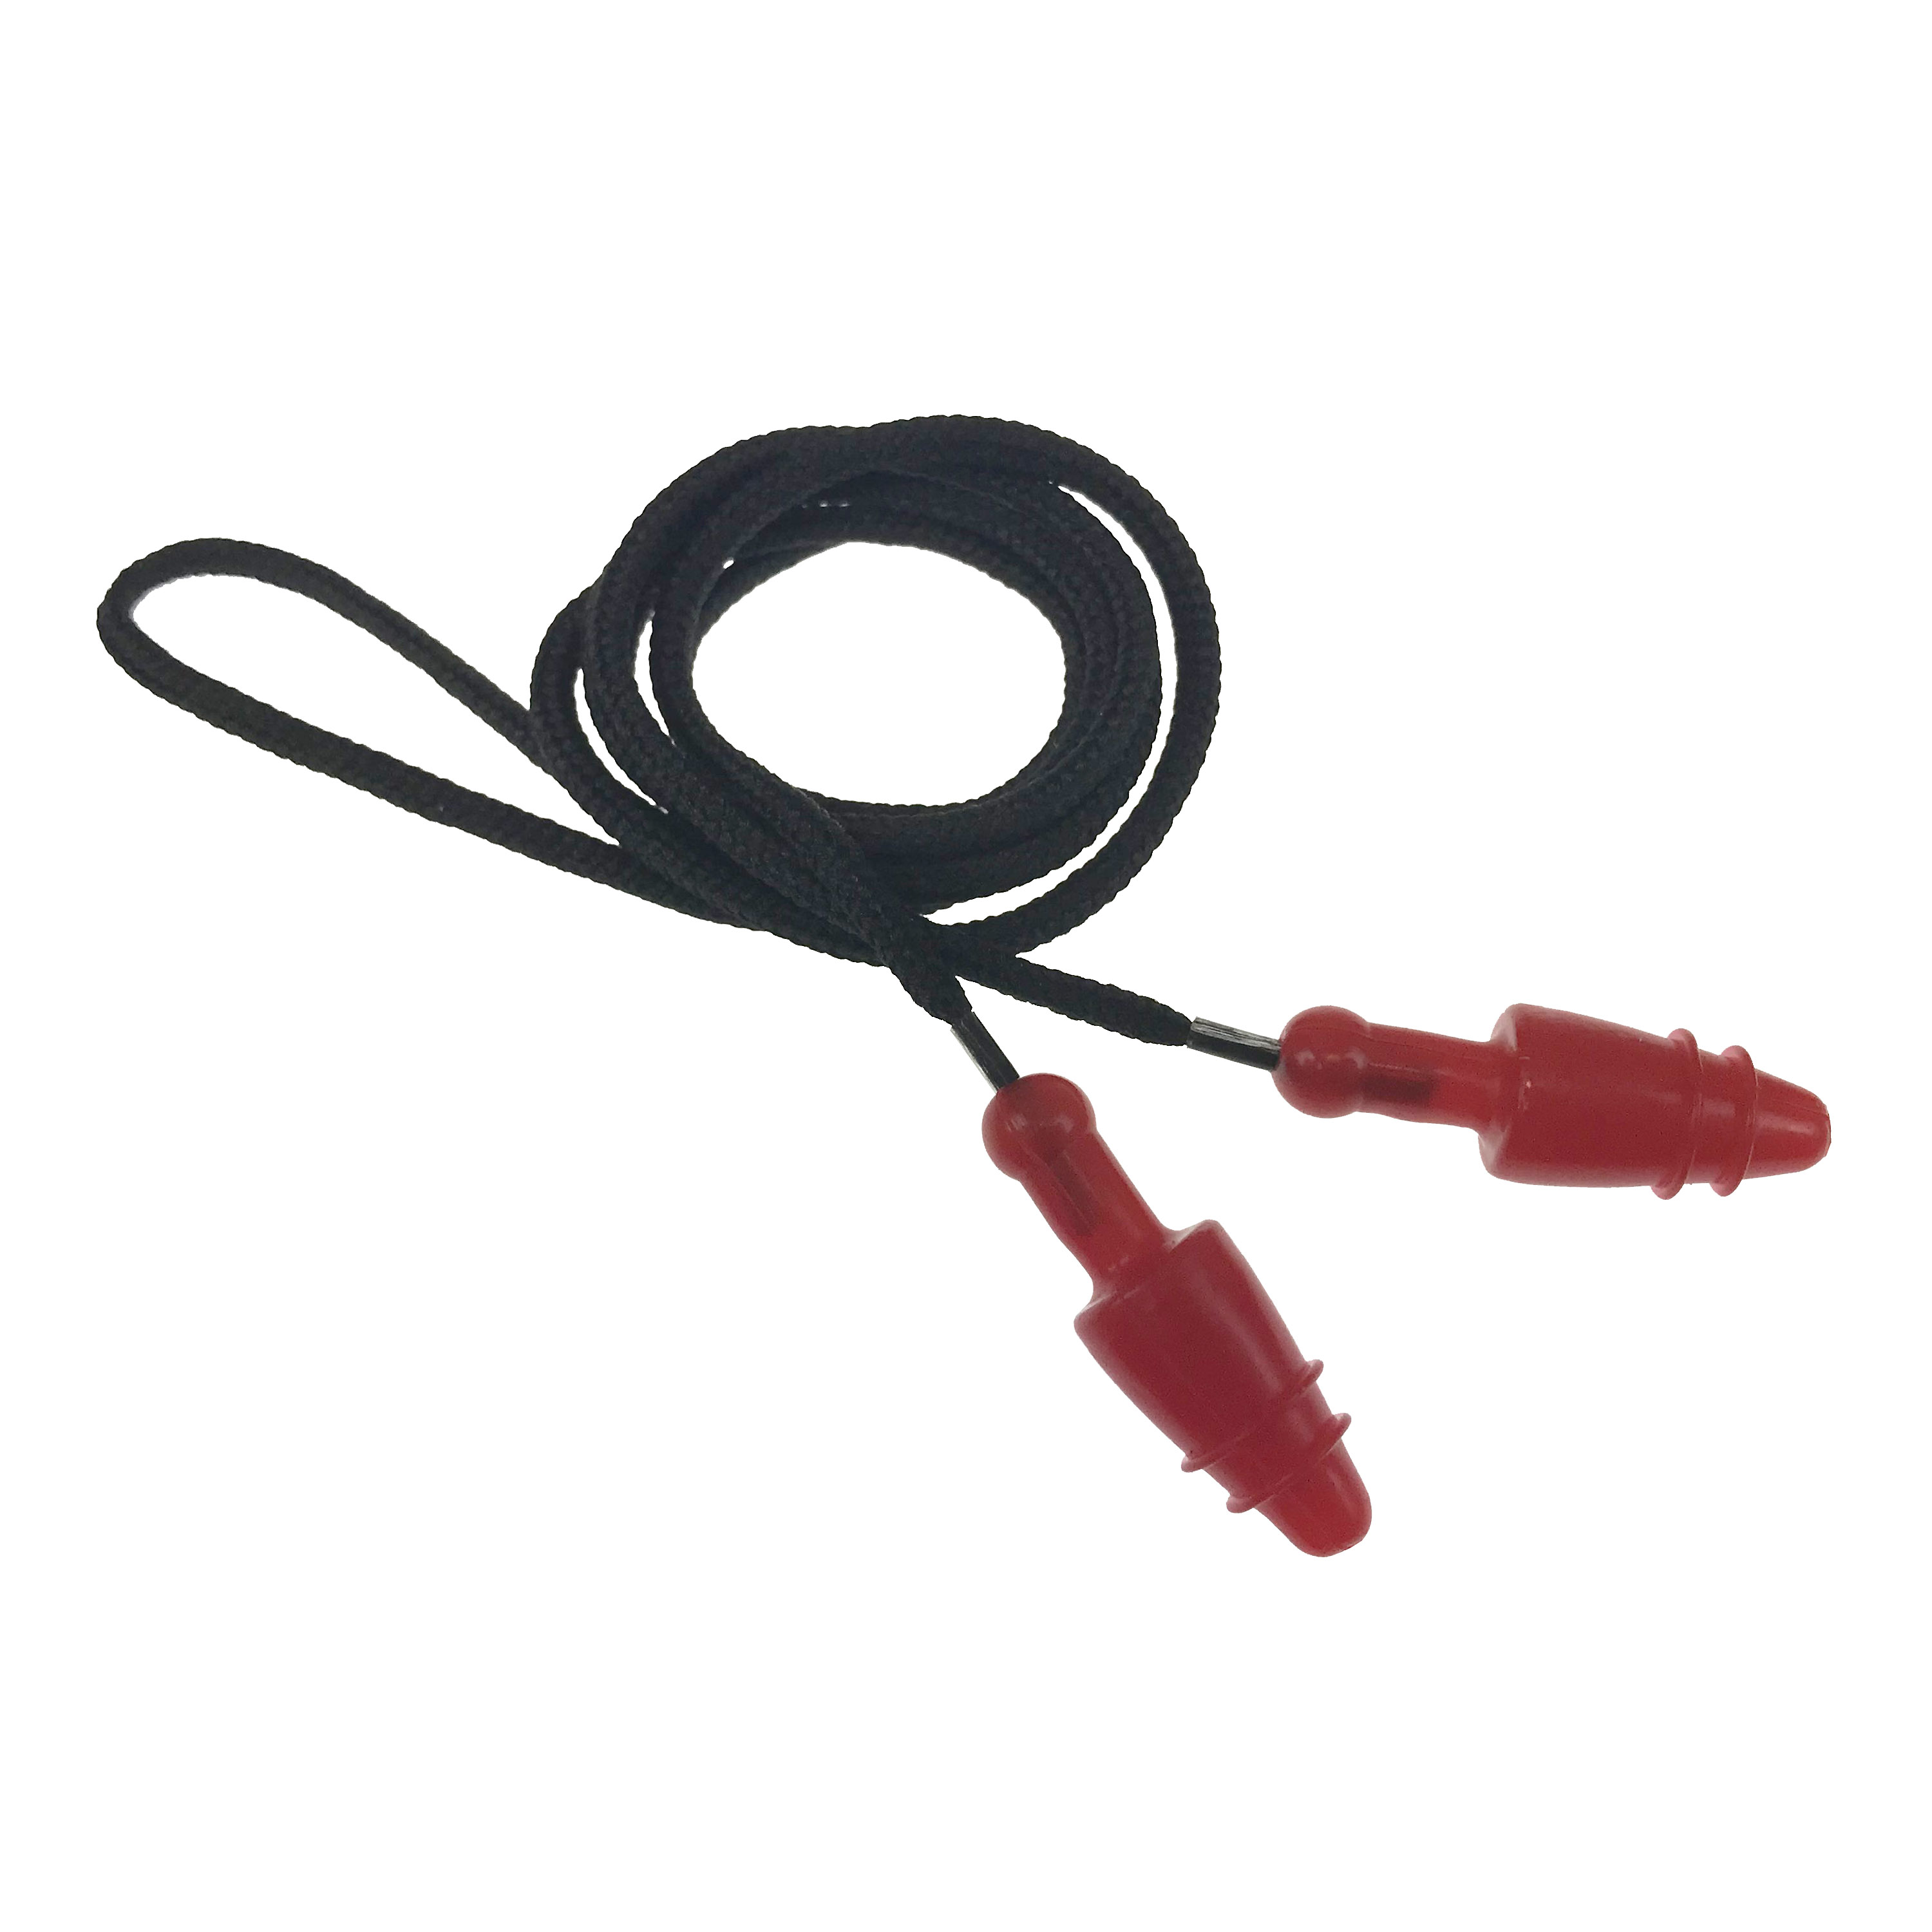 Snug Plug Earplugs - Corded - in Polybag - Corded Earplugs